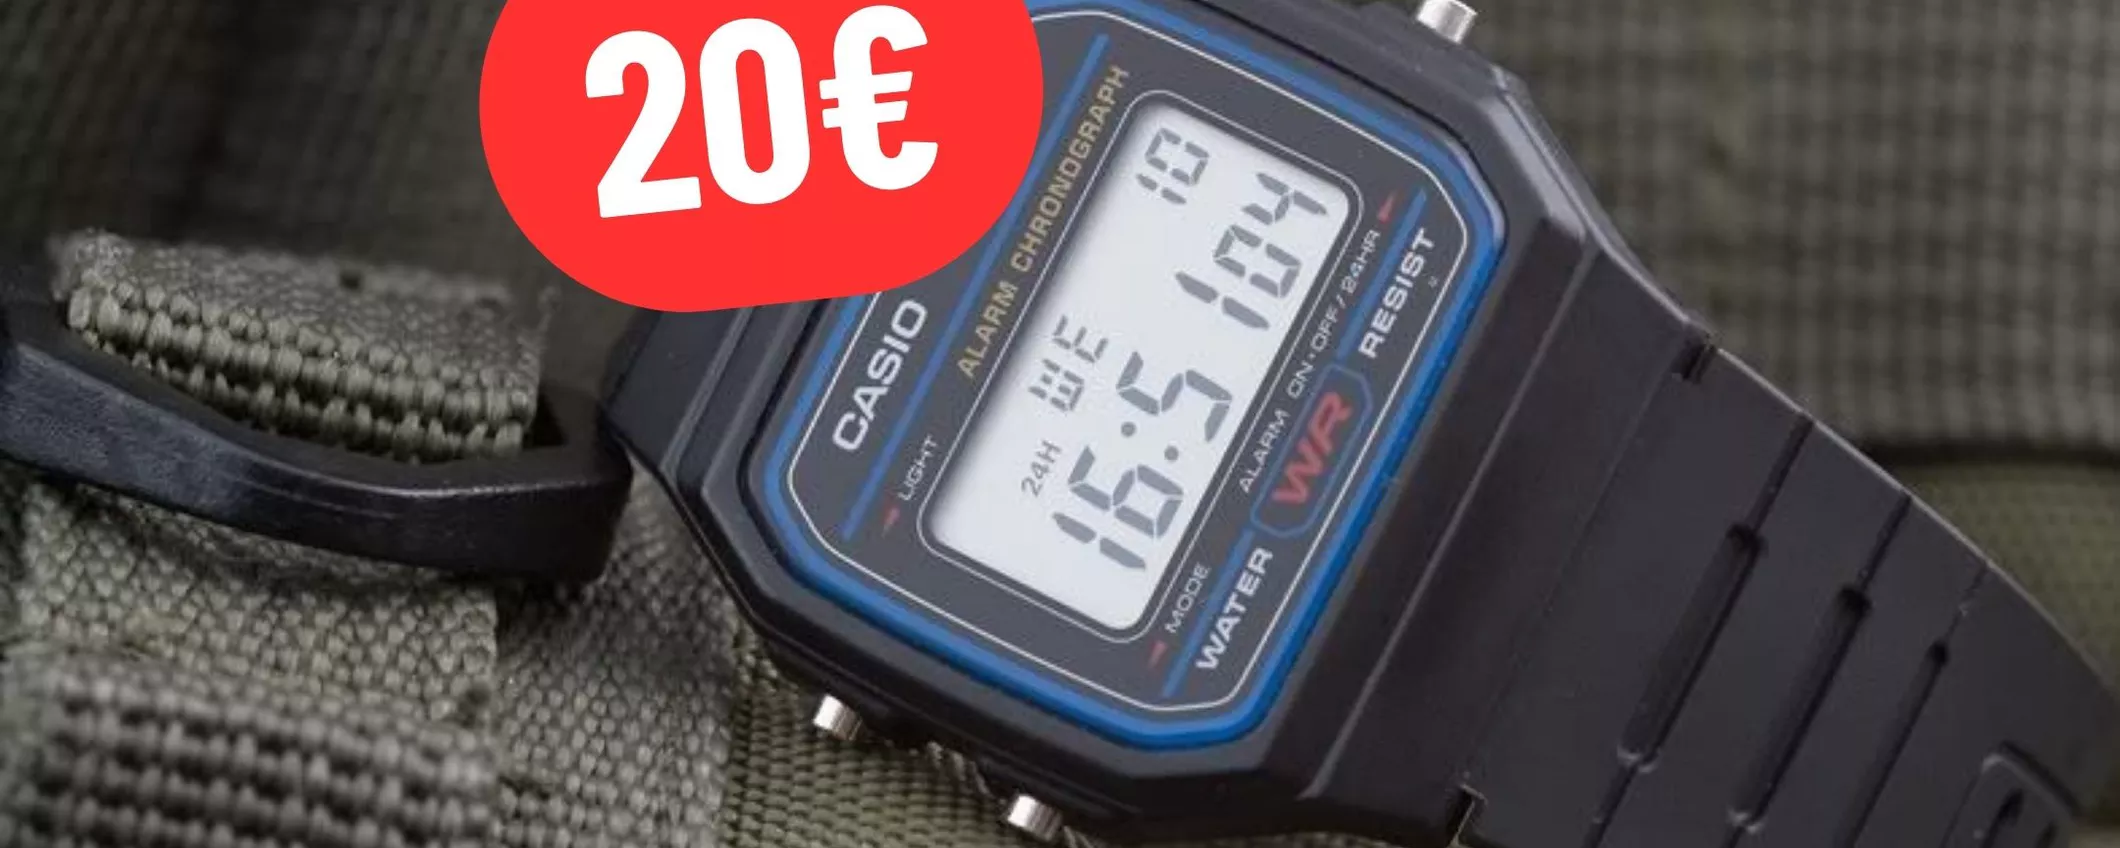 Orologio Casio a soli 20€ con lo sconto presente su eBay